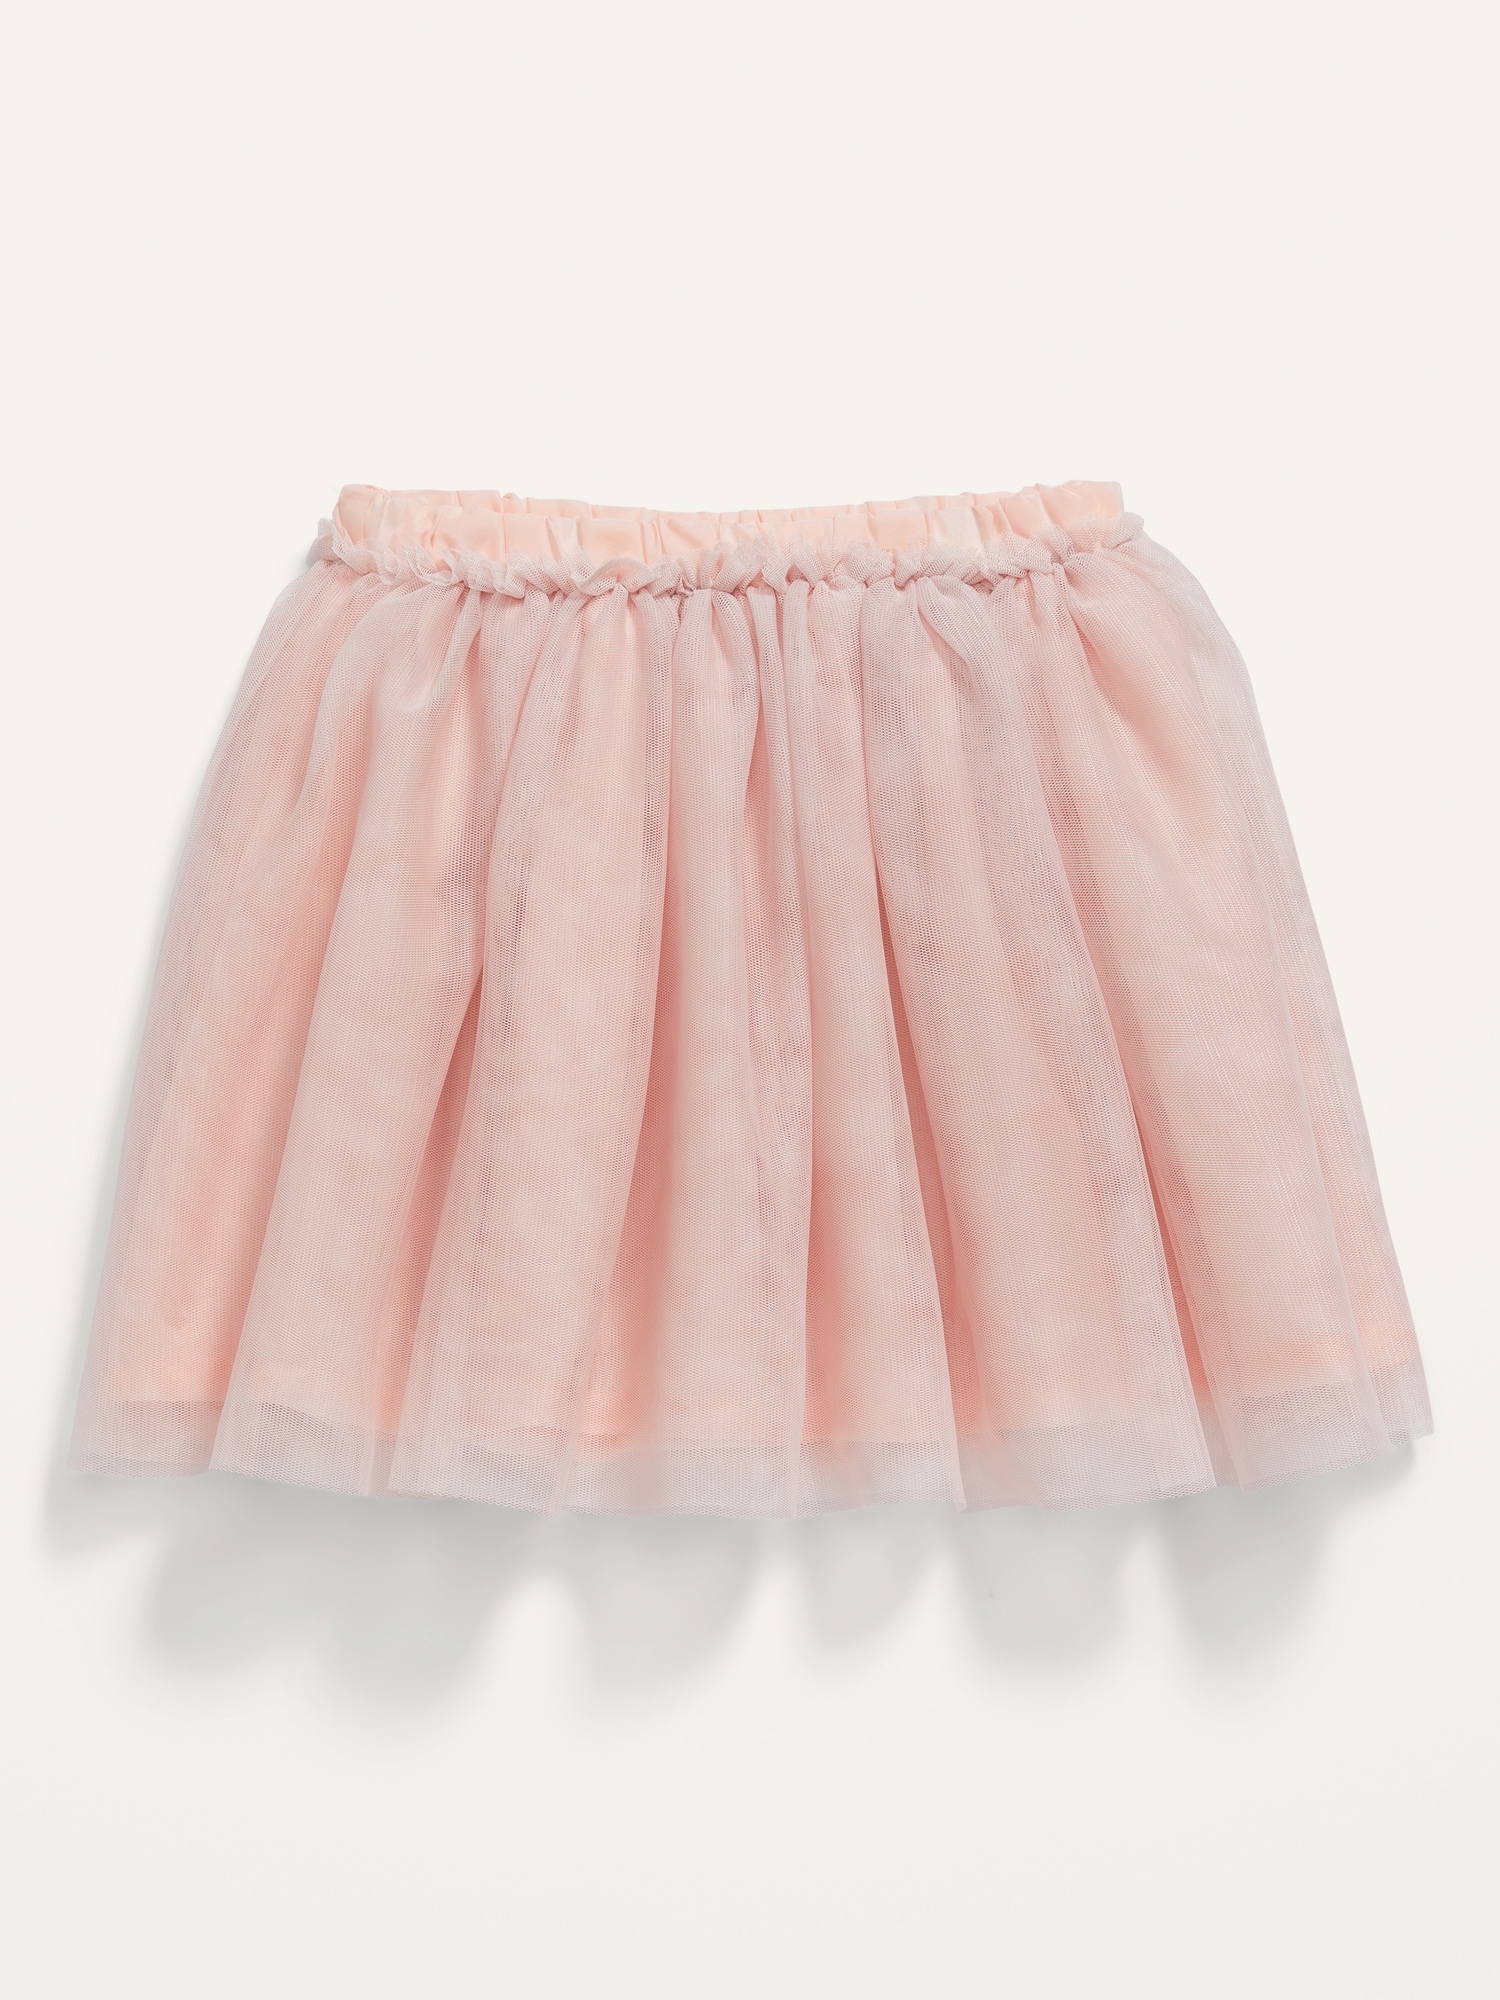 Tulle Tutu Skirt for Toddler Girls